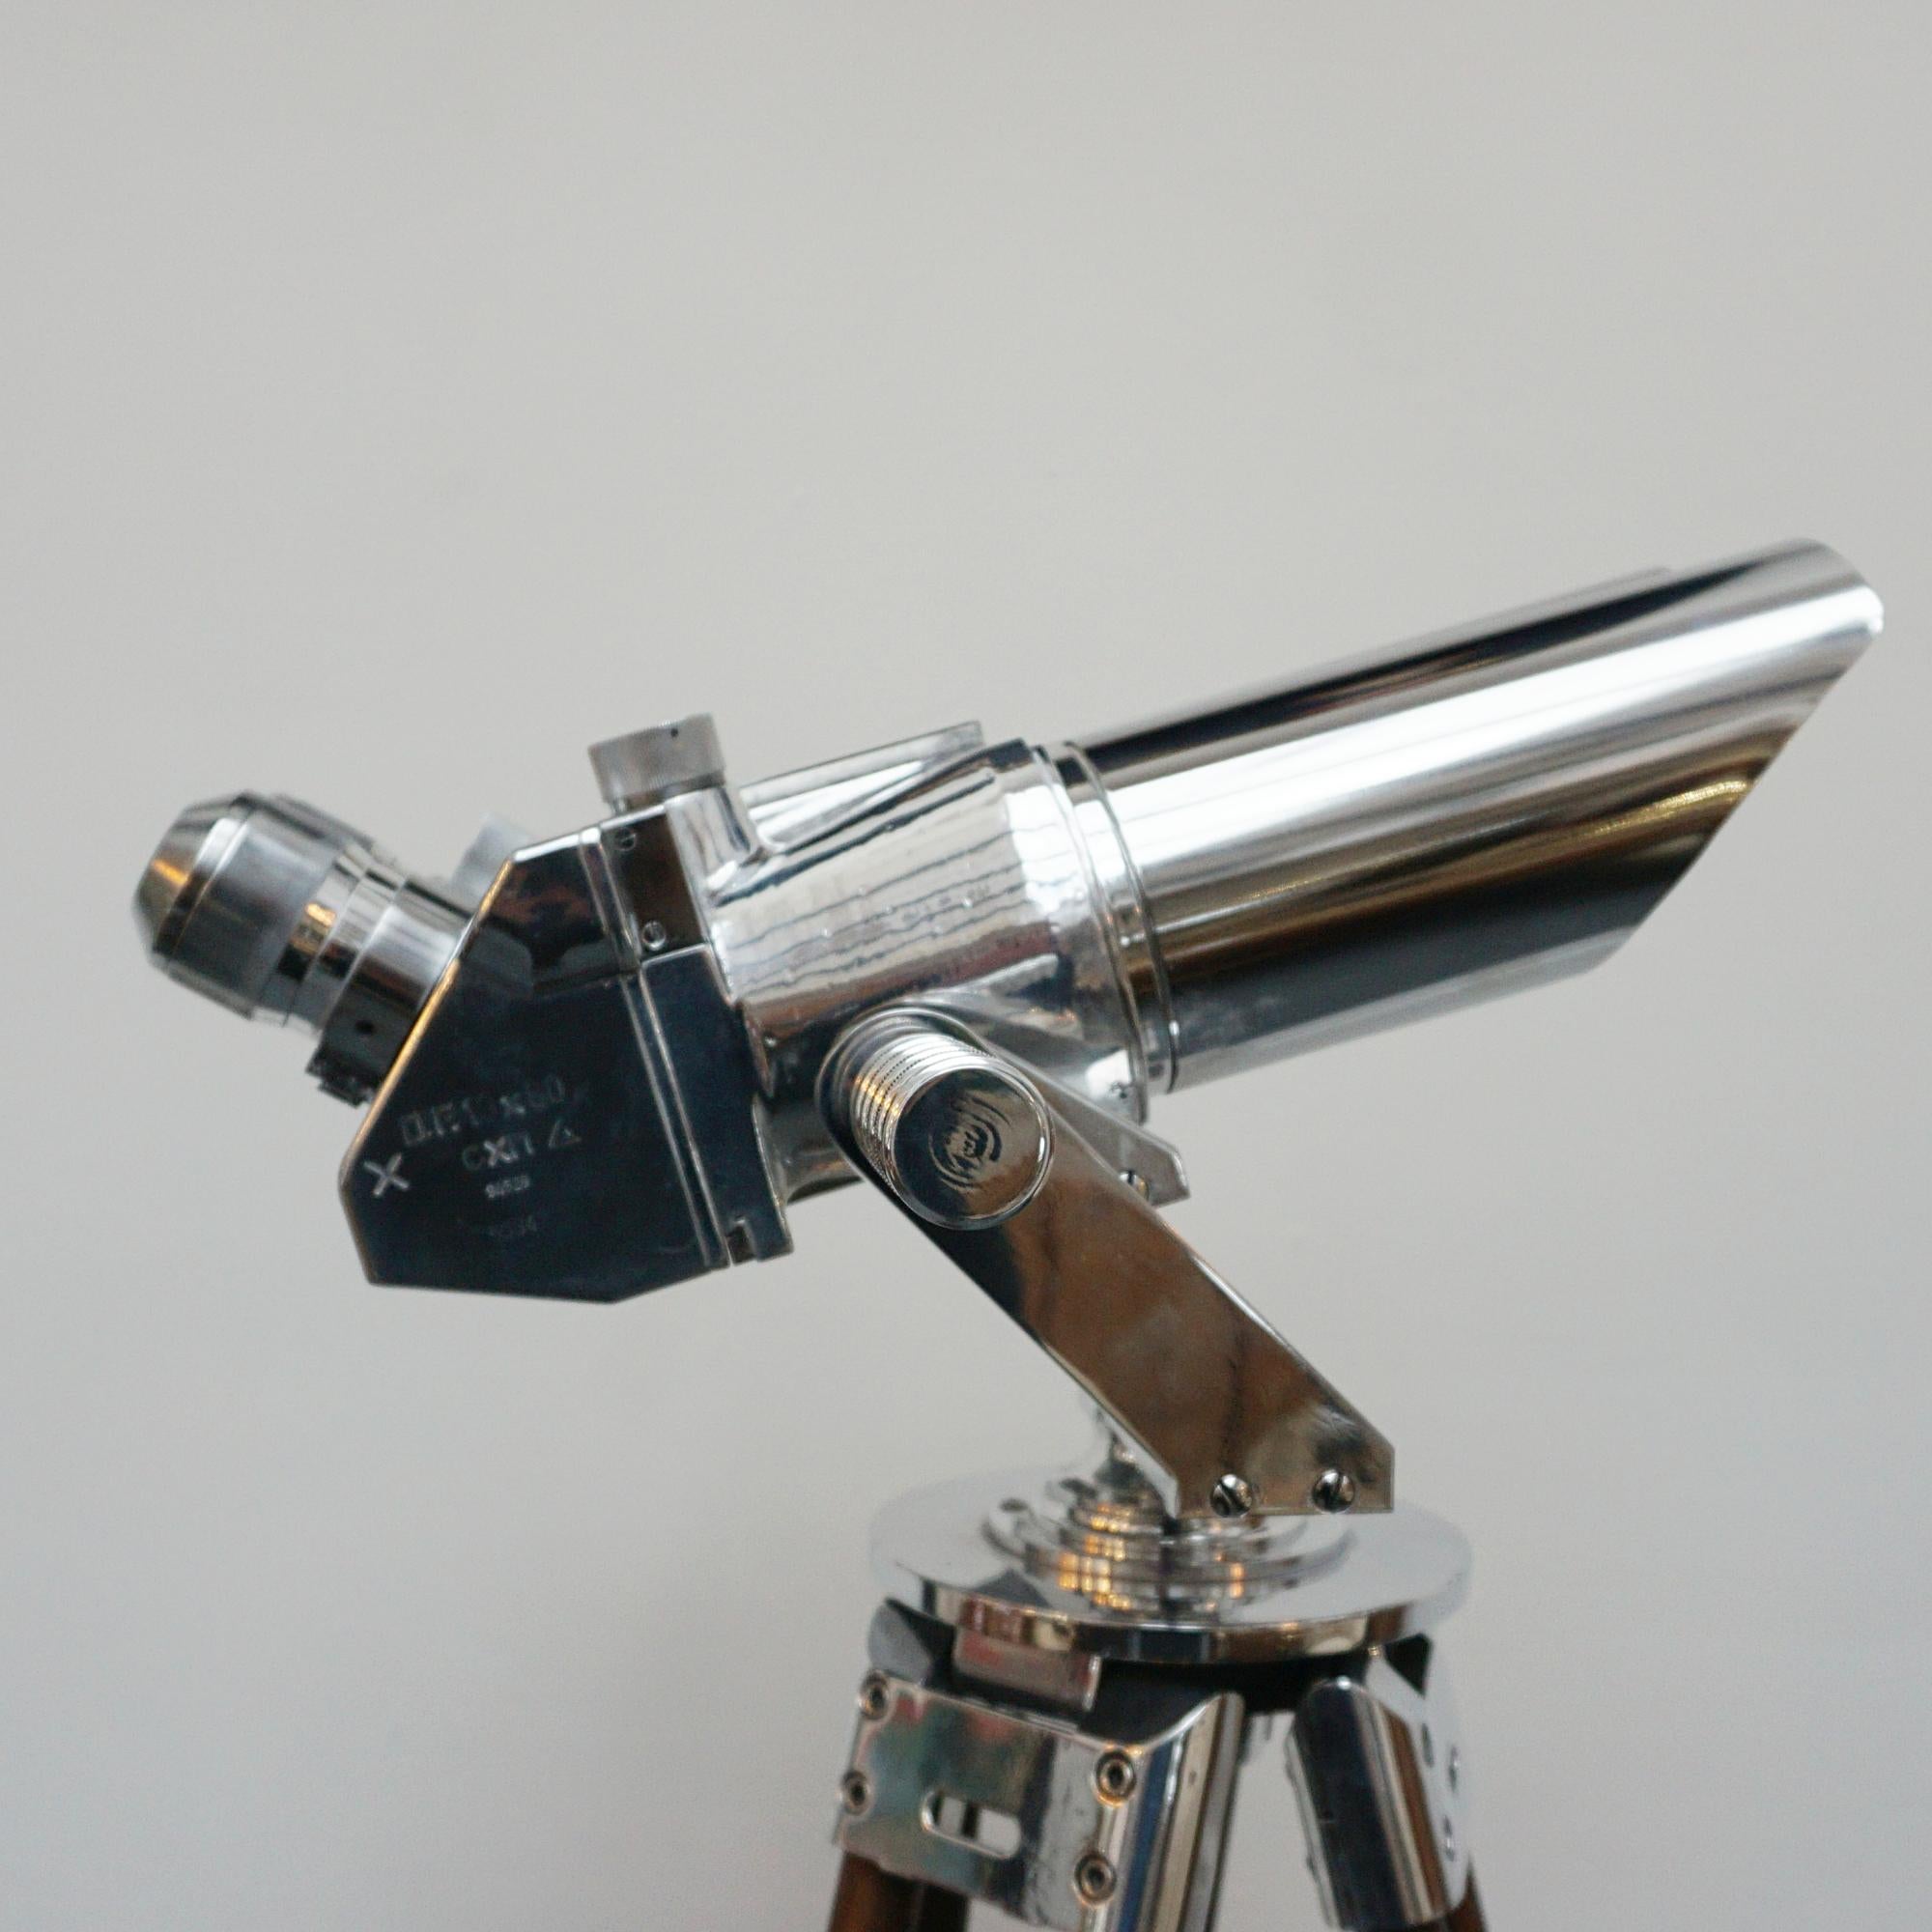 10 X 80 WW11 Marine Binoculars by Zeiss 1